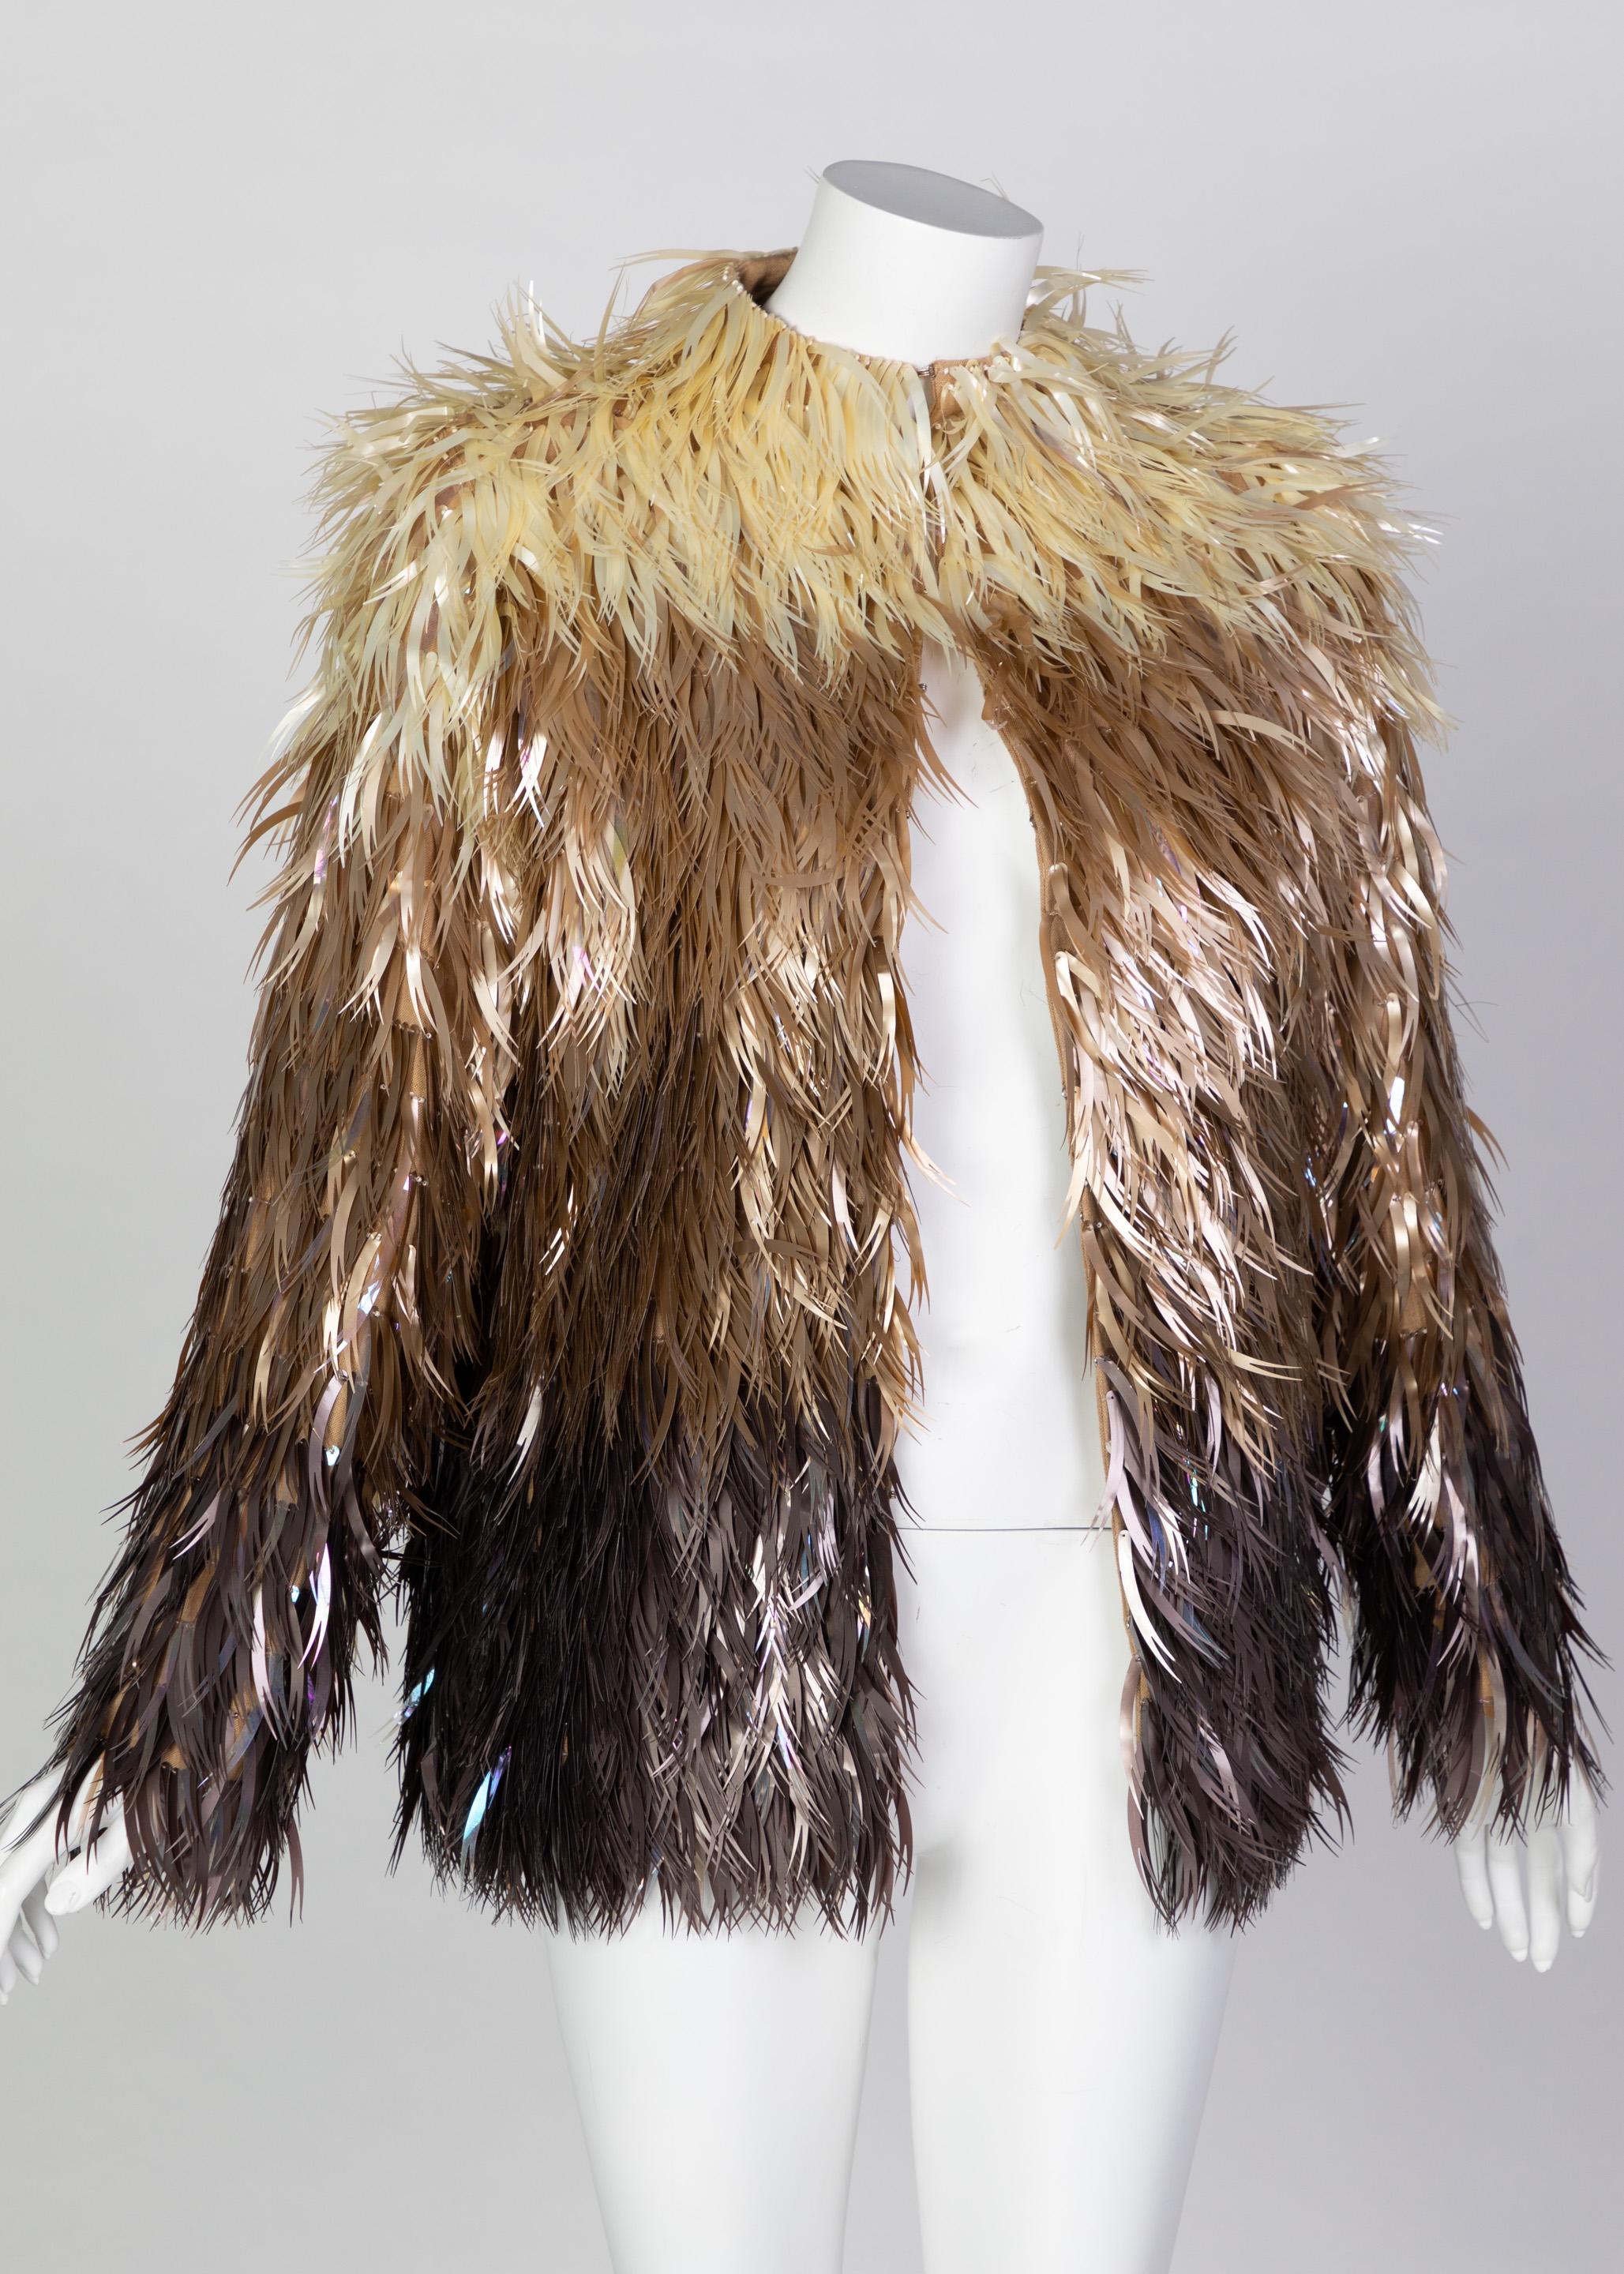 Chloé Stella McCartney - Manteau en plumes végétales, plastique et métal, défilé A/H 2000 Excellent état - En vente à Boca Raton, FL